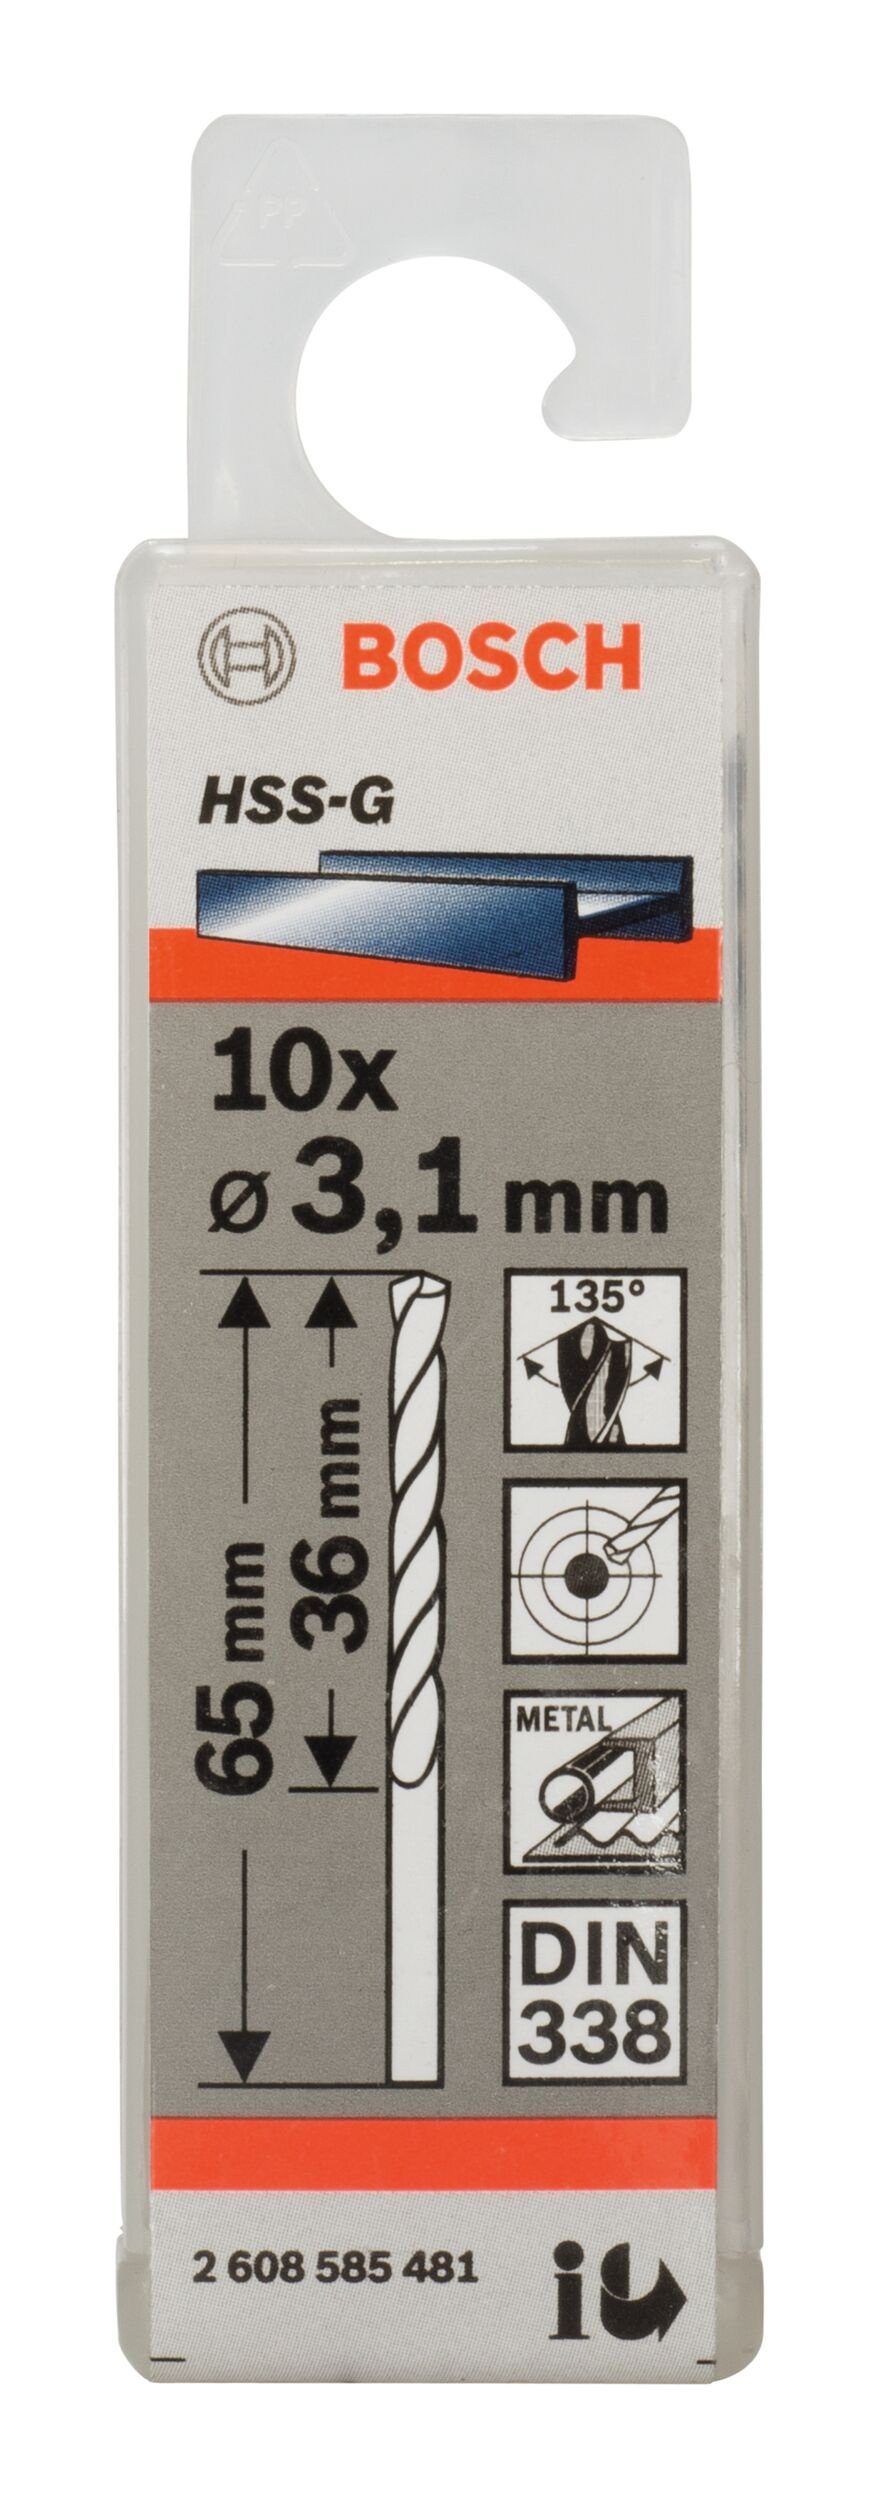 - 3,1 HSS-G 36 Metallbohrer, (10 x - Stück), 65 x 10er-Pack 338) (DIN BOSCH mm